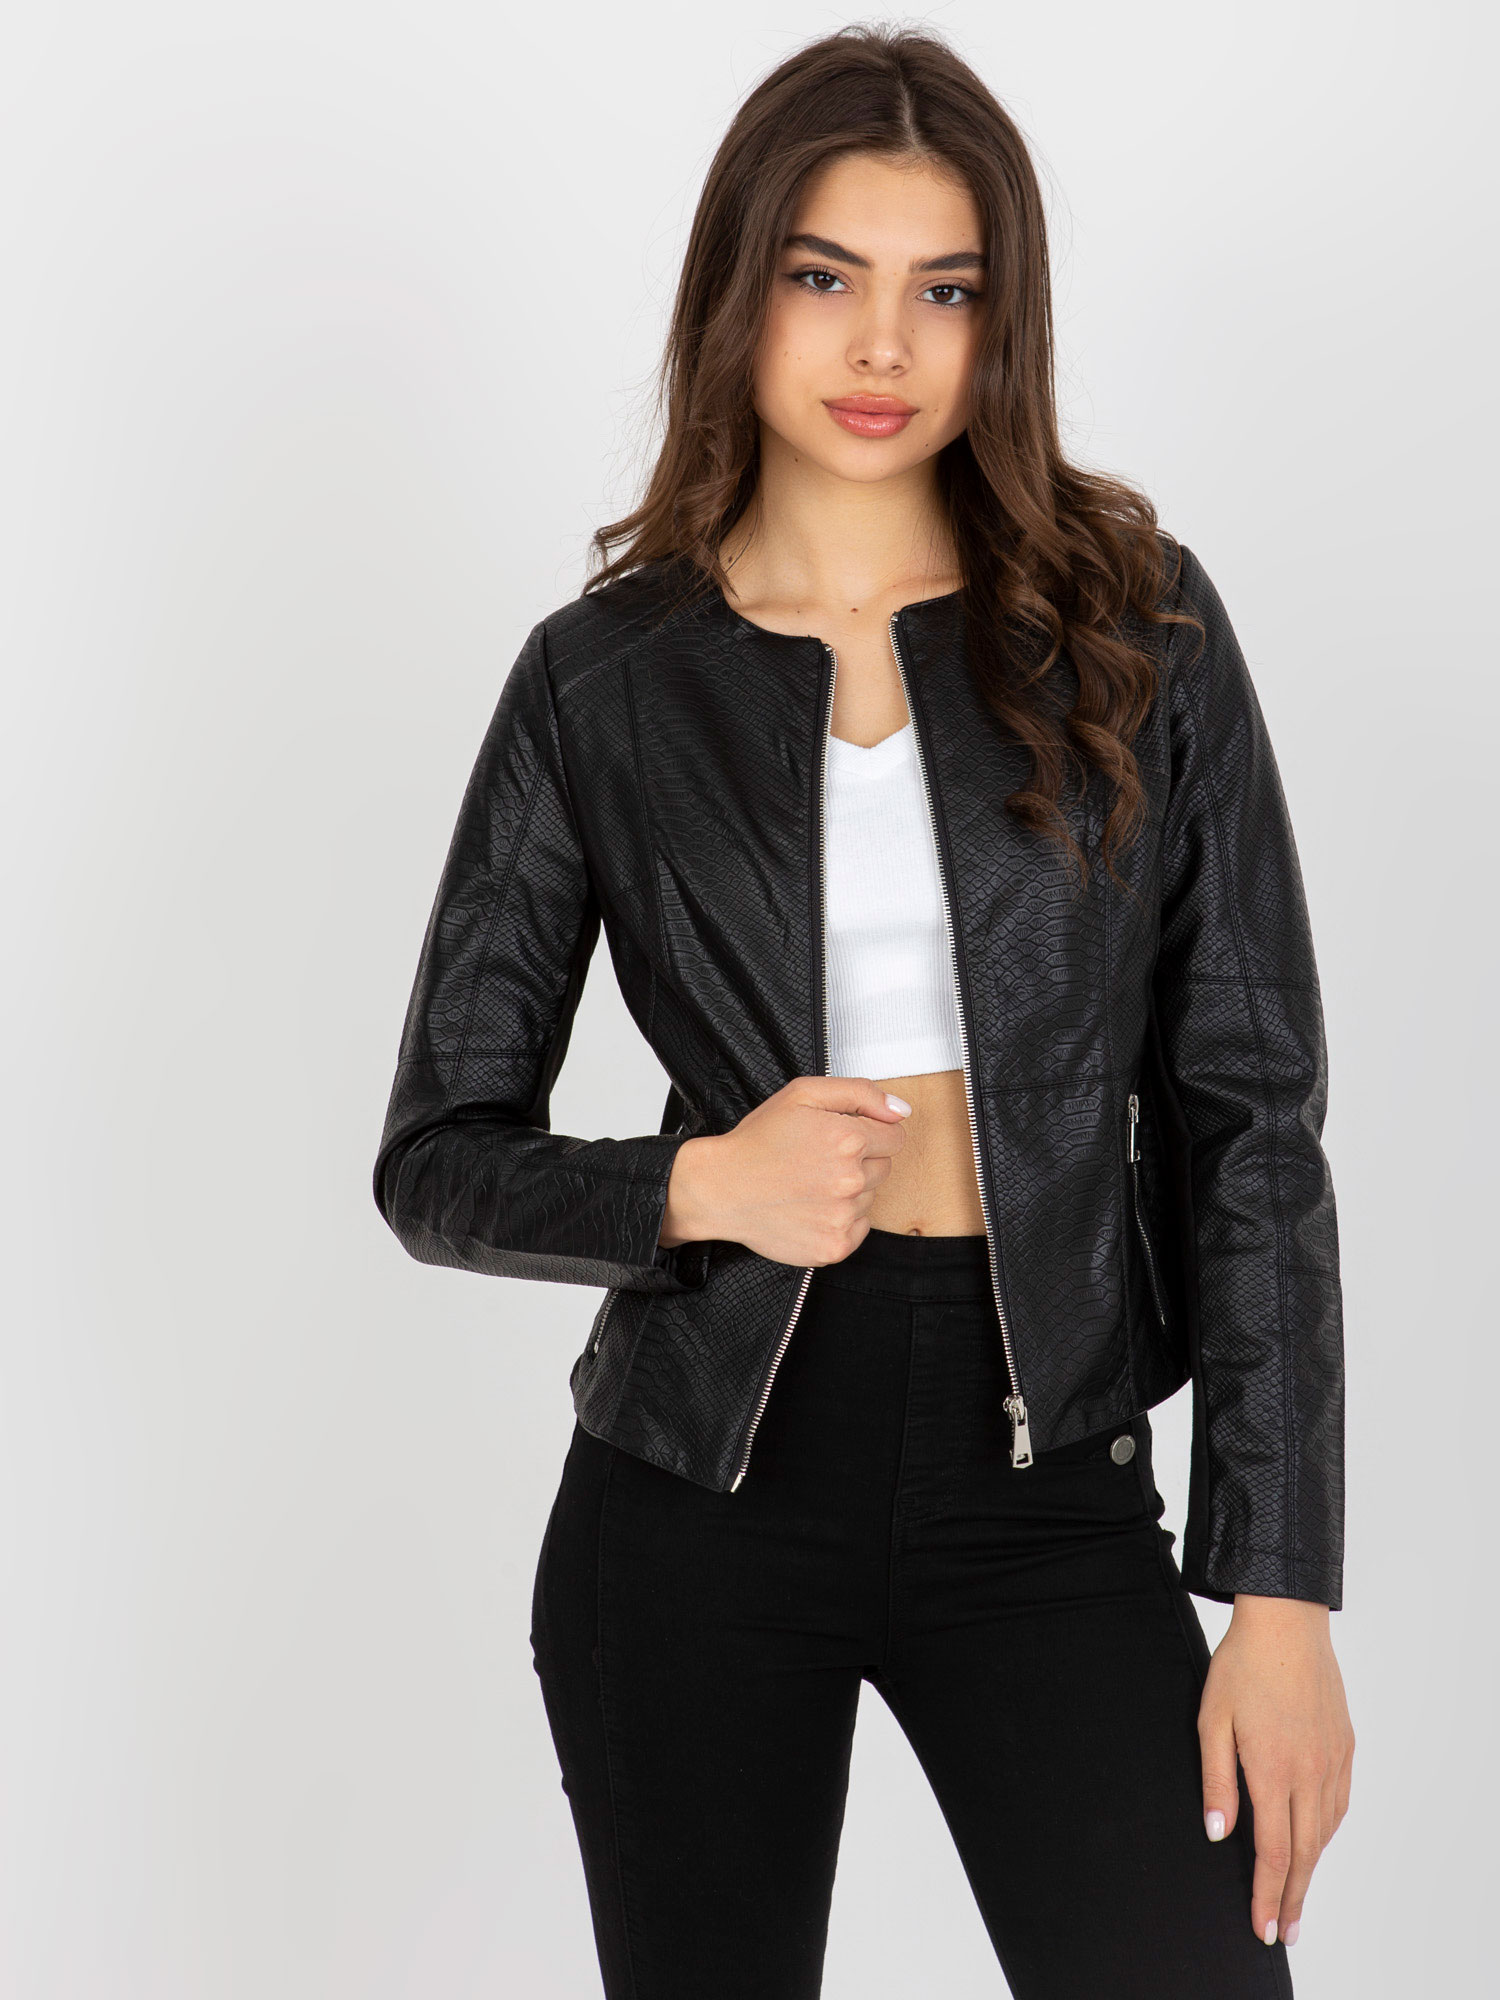 Čierna dámska vzorovaná koženková bunda NM-KR-DA-0526.55-black Veľkosť: L